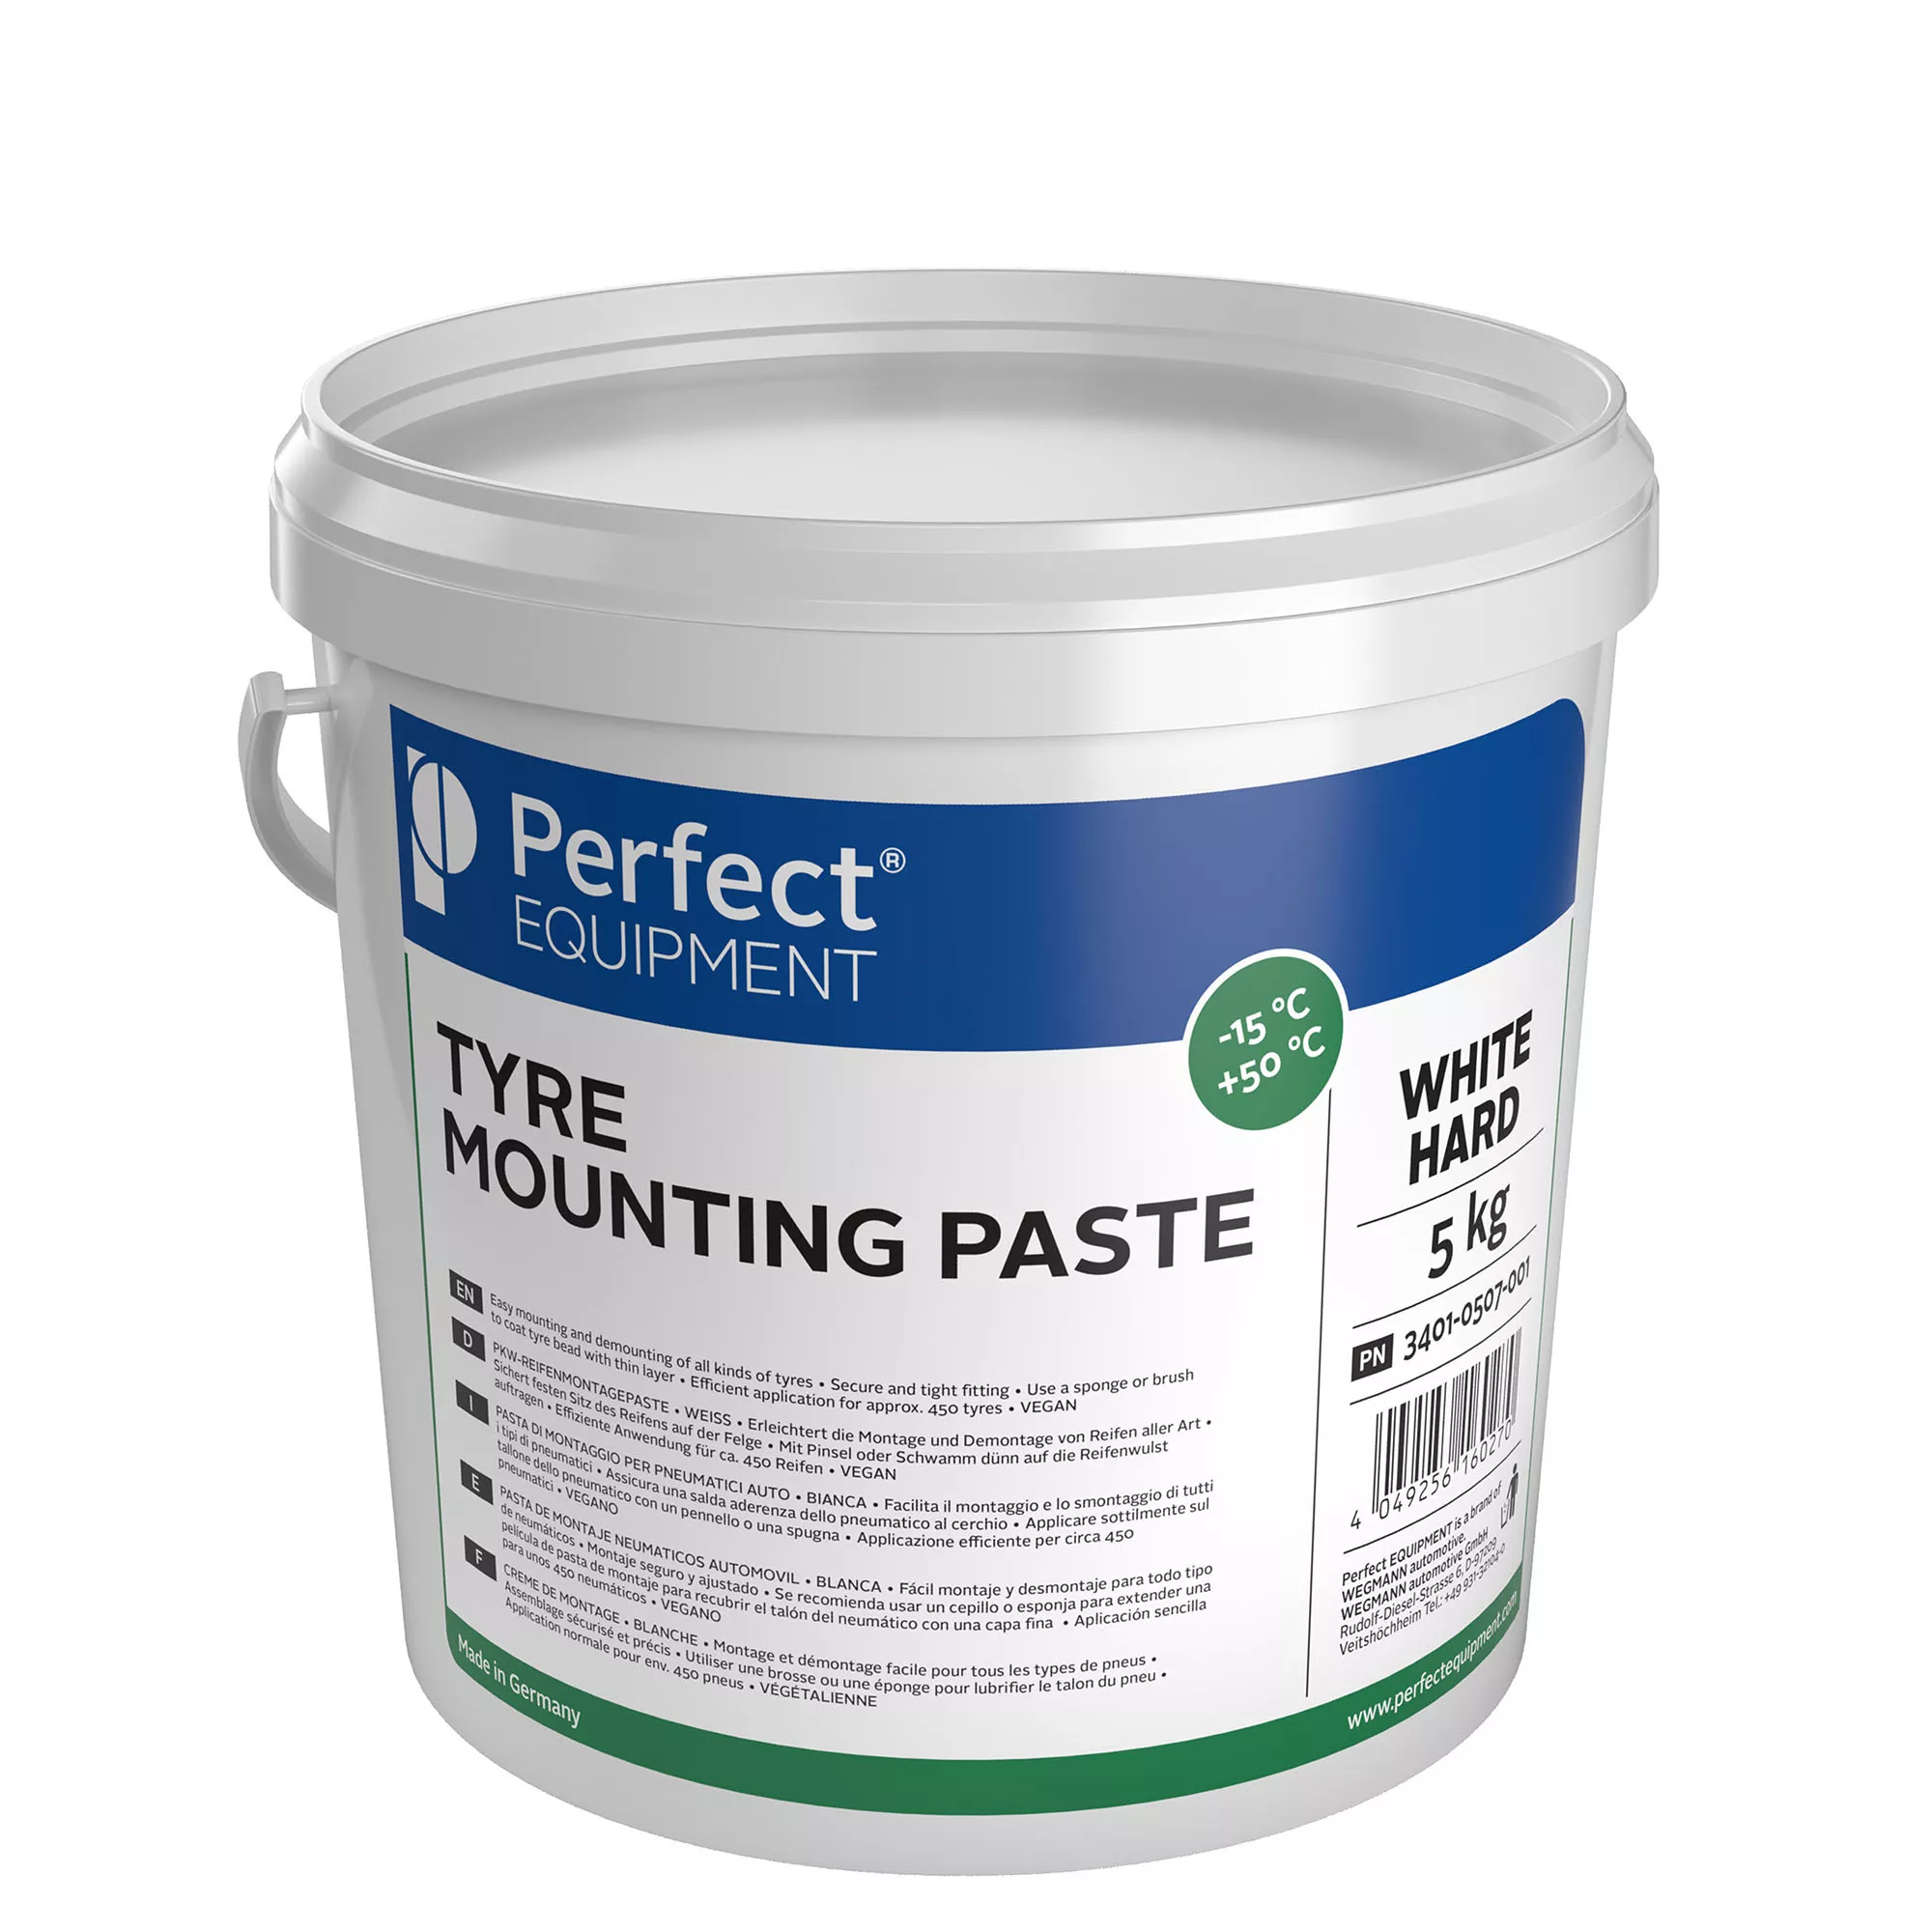 Mounting paste - white, hard, 5kg